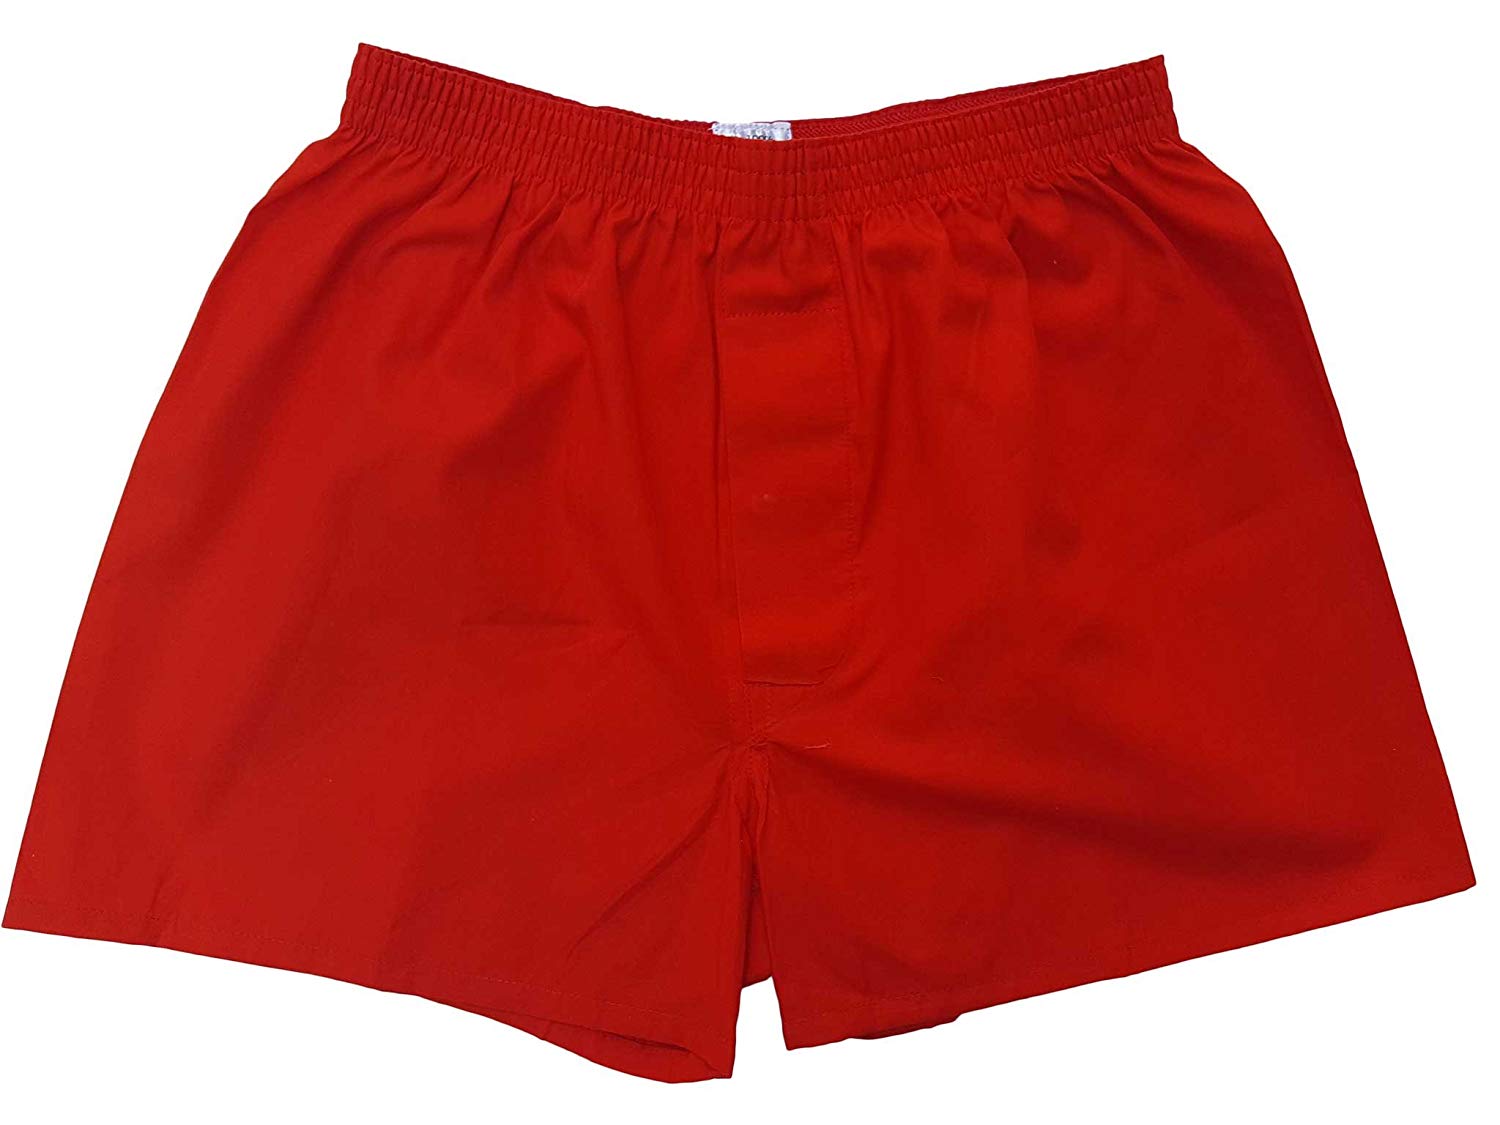 トランクス 赤 赤色 赤い 日本製 6枚 セット 父の日 ギフト 誕生日 プレゼント 福袋 【送料無料】 還暦祝い メンズ 下着 男性 M L LL 綿100% 前開き 赤パンツ